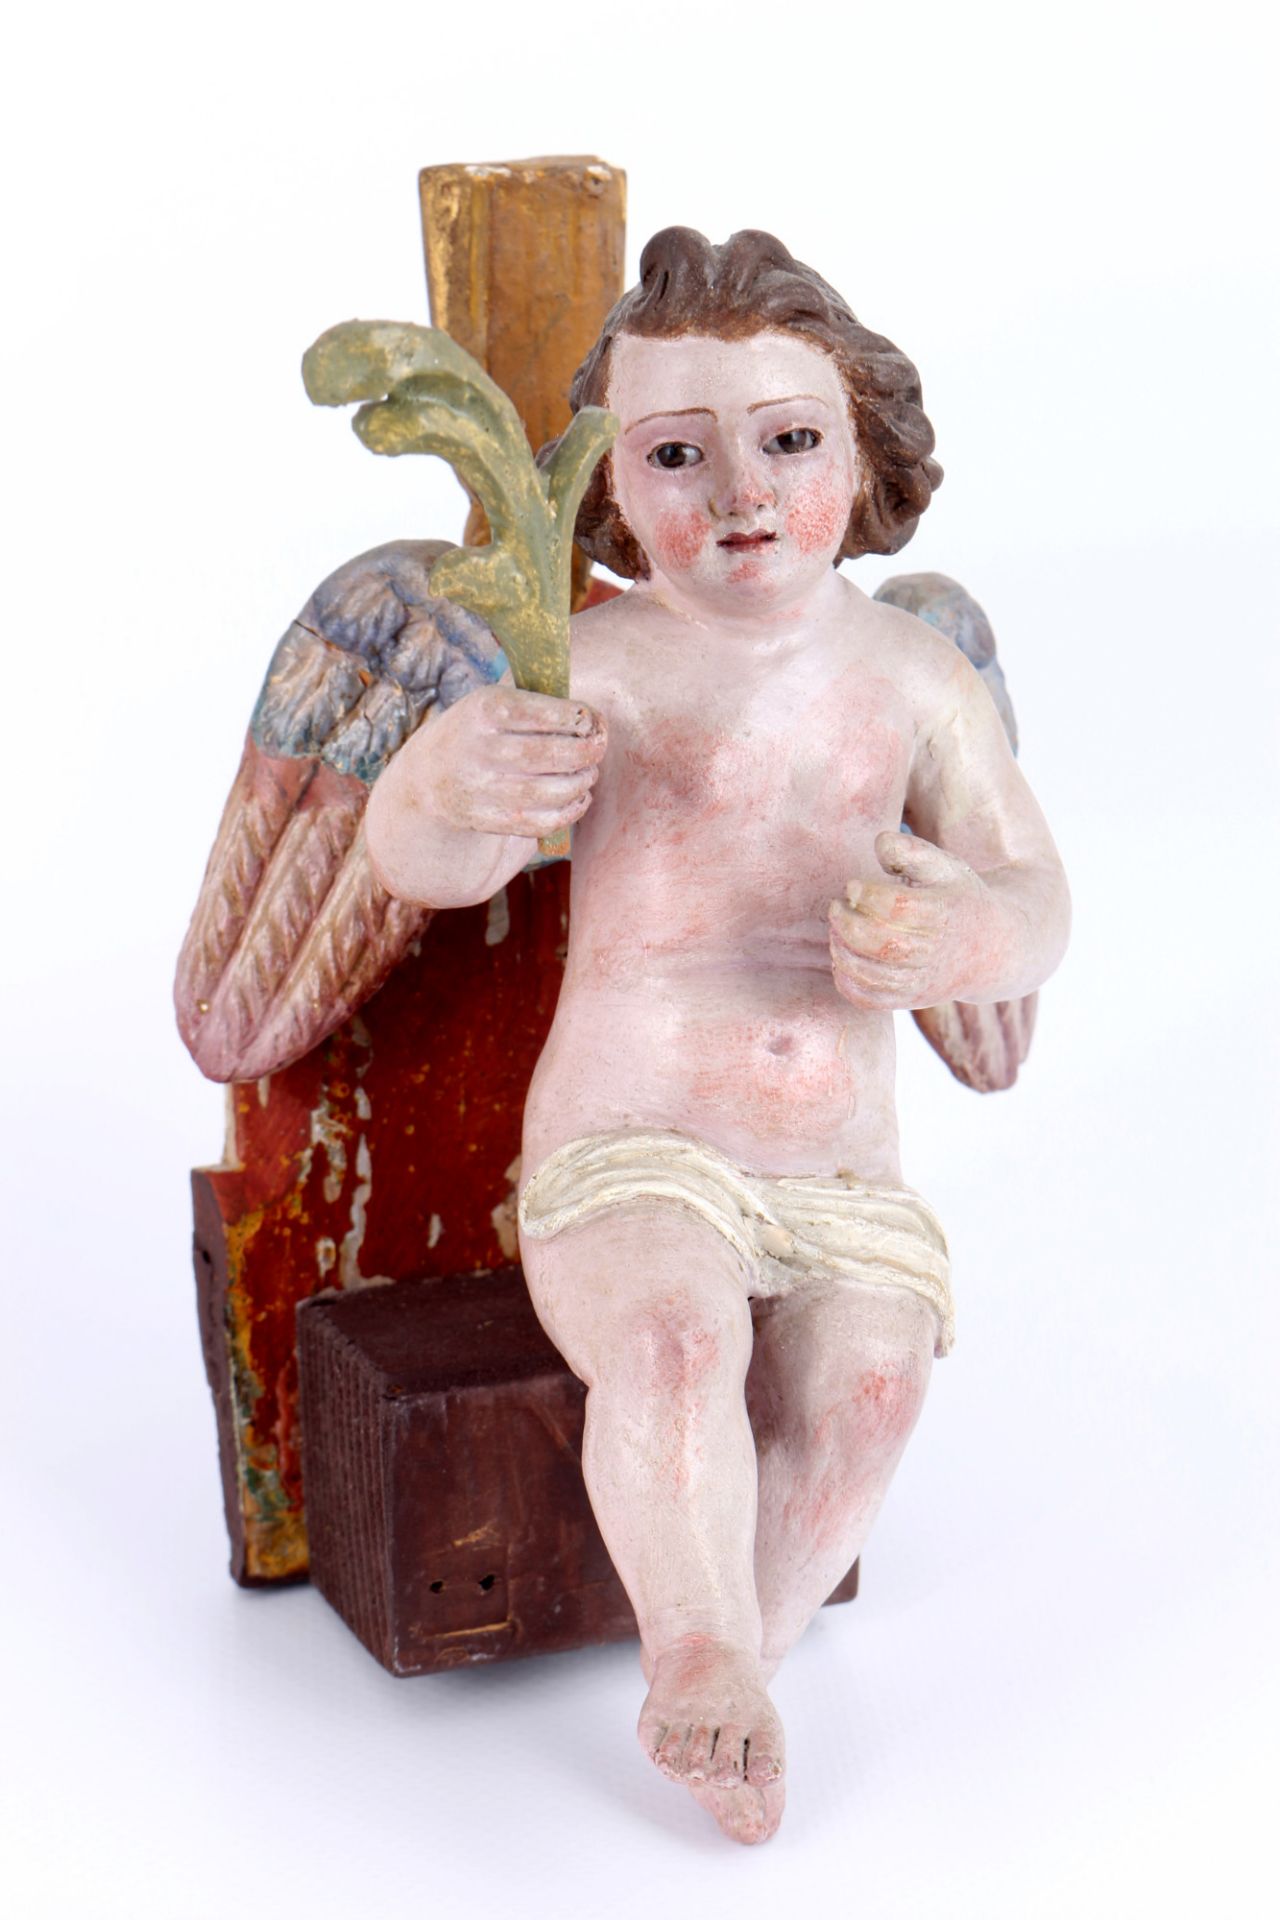 2 Putten Engel Skulpturen 18./19. Jahrhundert, cherub sculptures 18th century, - Bild 3 aus 6